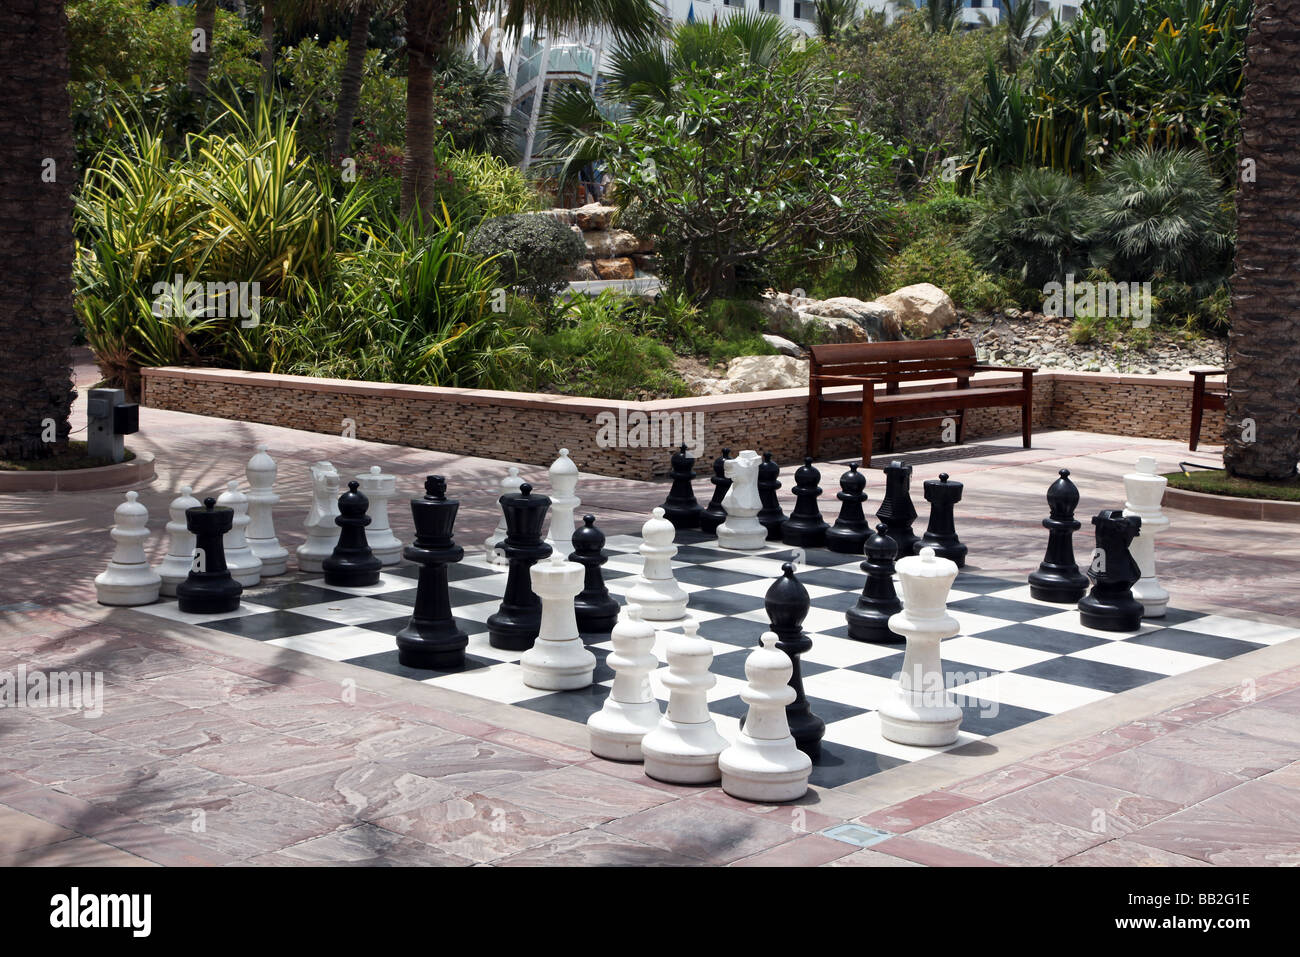 chess game outdoors Dubai Stock Photo - Alamy